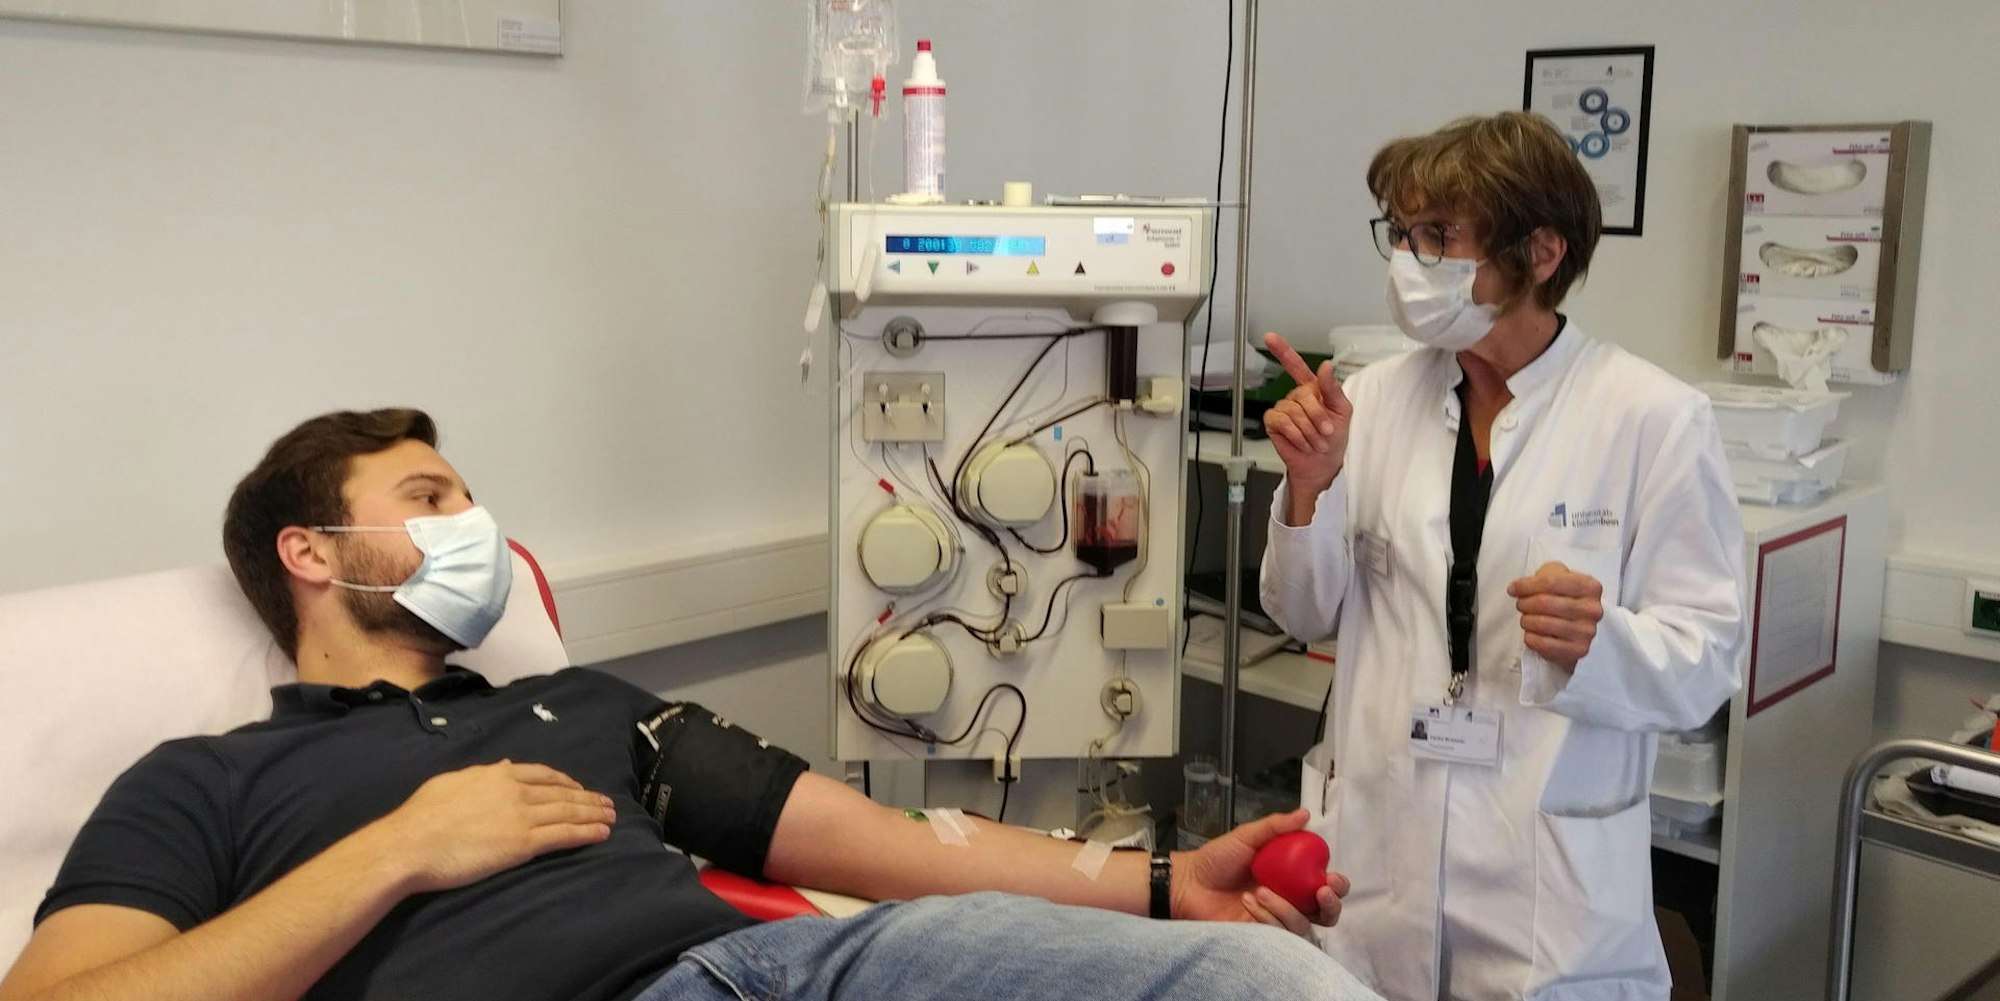 Einer der ersten Spender ist Jan K. Die Mitarbeiterin des Blutspendedienstes am Universitätsklinikum Bonn Heike Brüssler erklärt dem wieder genesenen Covid-19-Patienten den Ablauf der Plasmaspende.